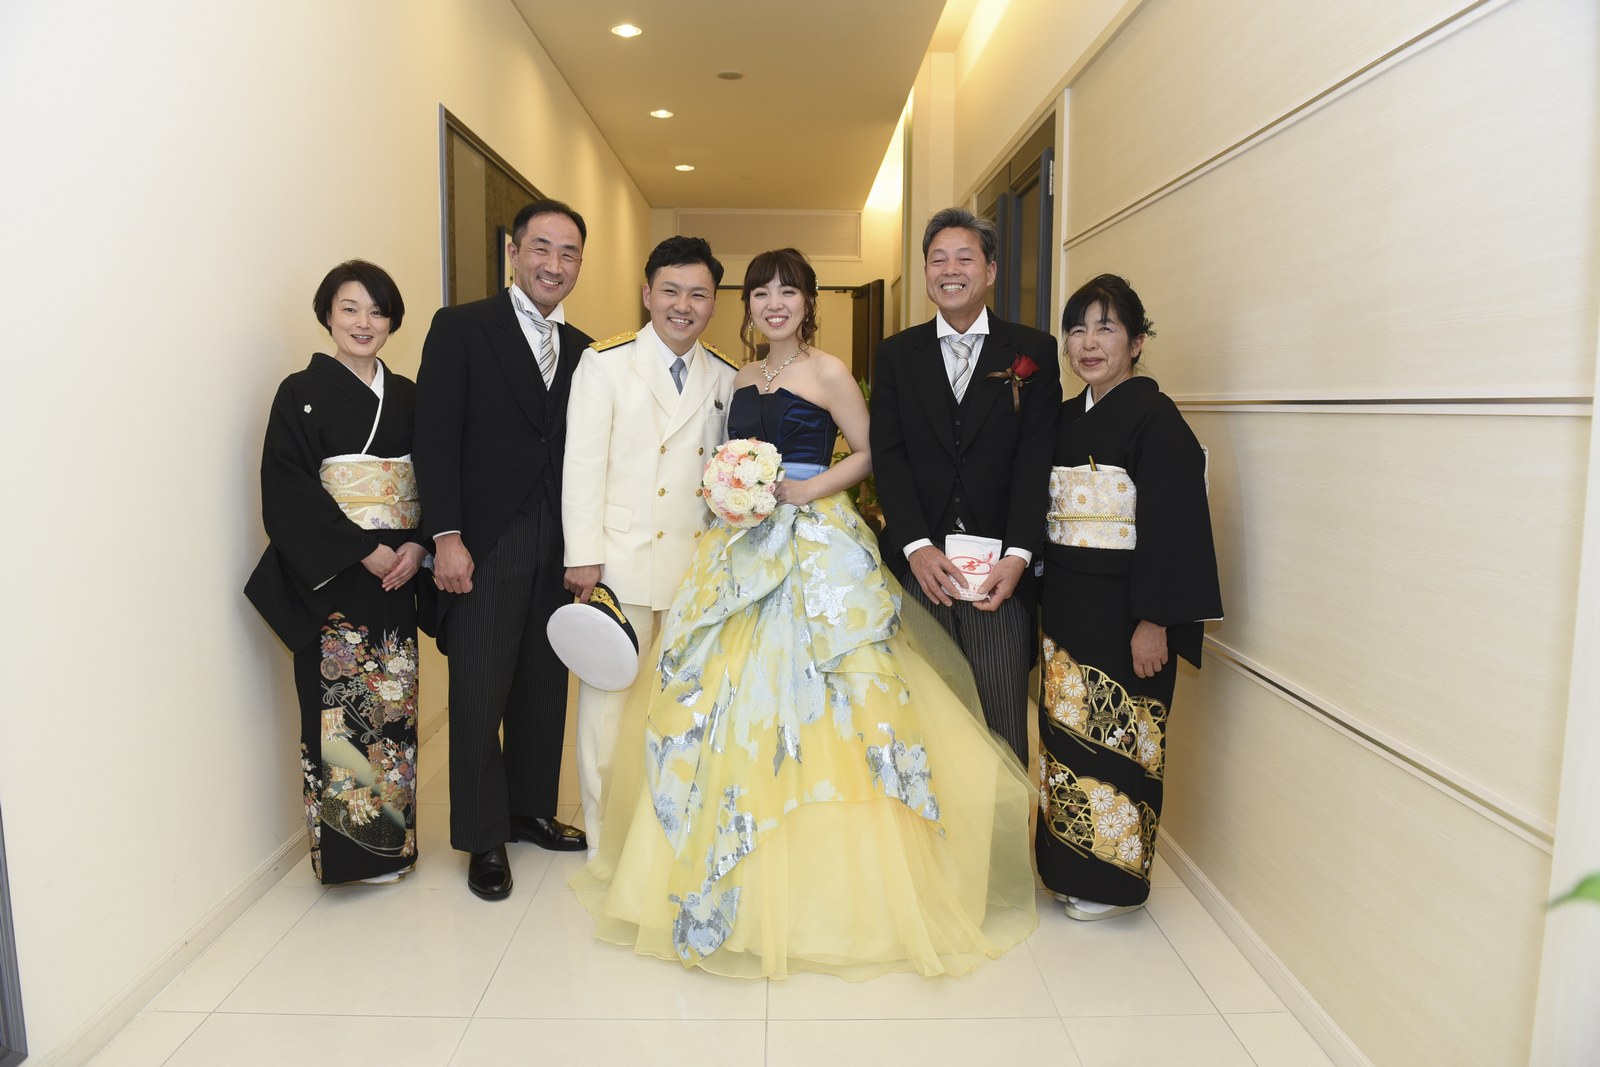 徳島市の結婚式場ブランアンジュで無事おひらきを迎えられた新郎新婦様と両家ご両親様